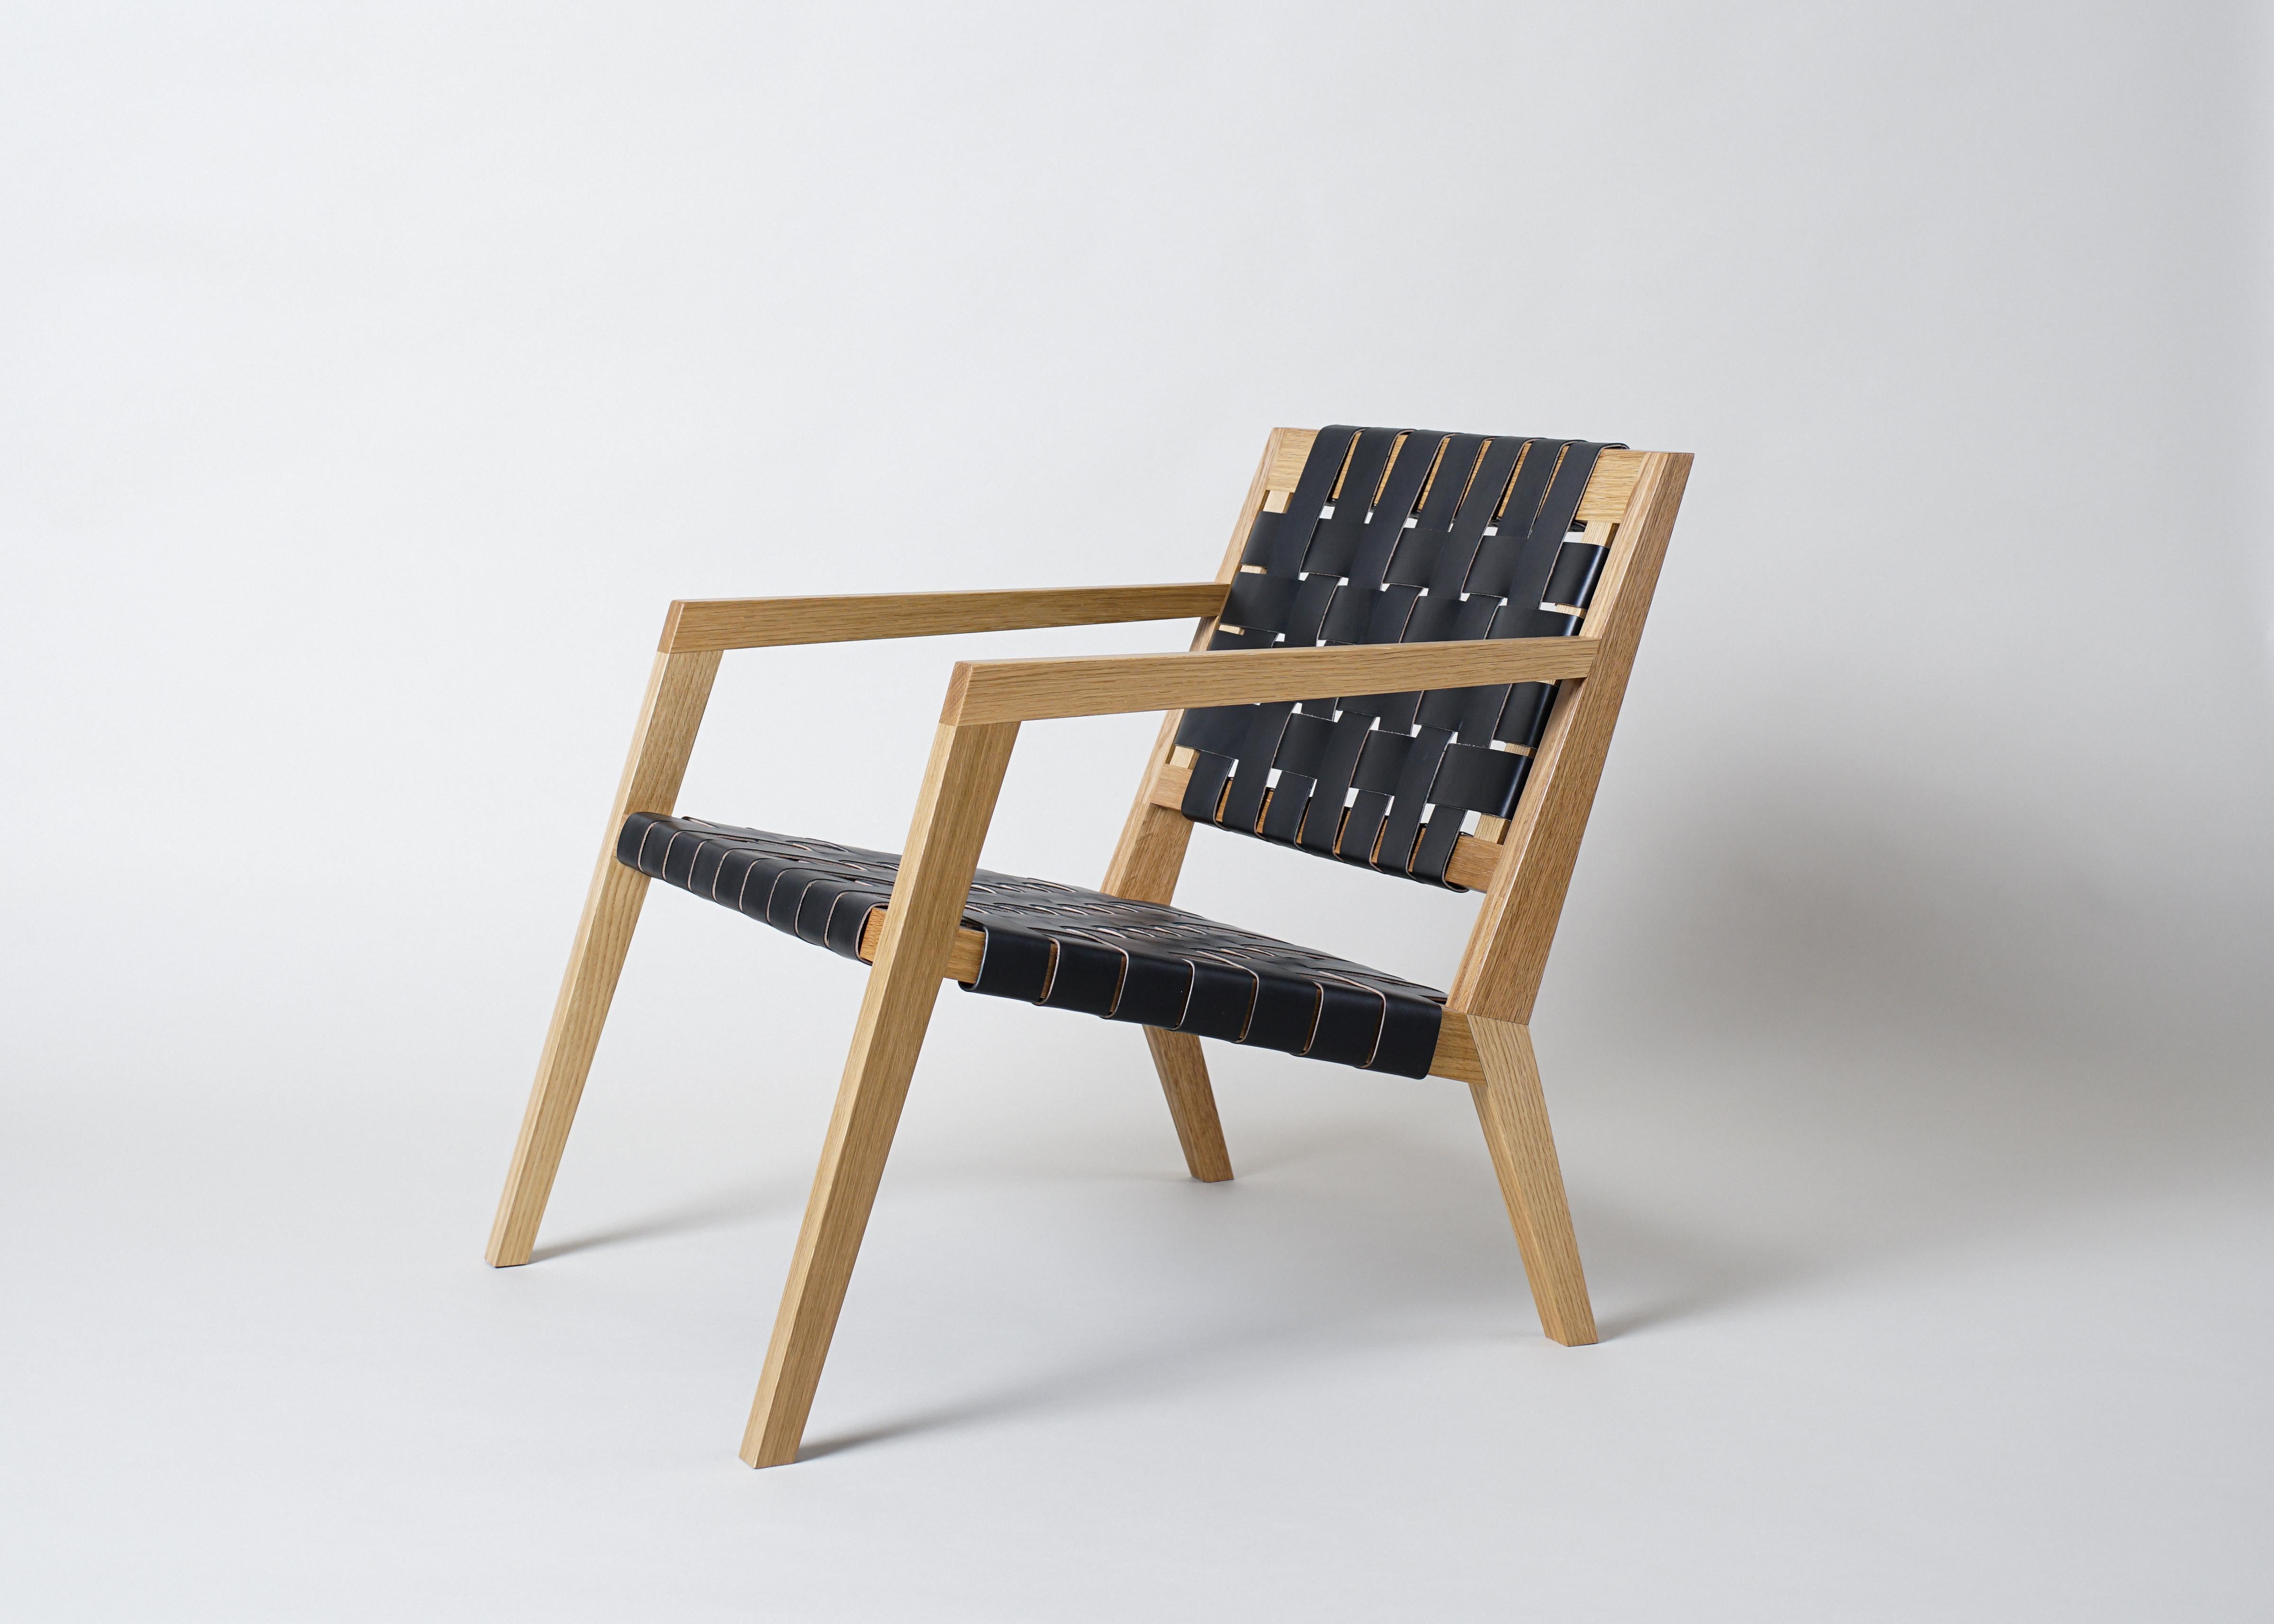 Le fauteuil de salon Nadine de Phloem Studio est un fauteuil de salon moderne et contemporain avec un cadre en bois massif et un siège en cuir tressé. Avec une menuiserie cannelée artisanale exposée et un gracieux dossier incurvé en bois massif